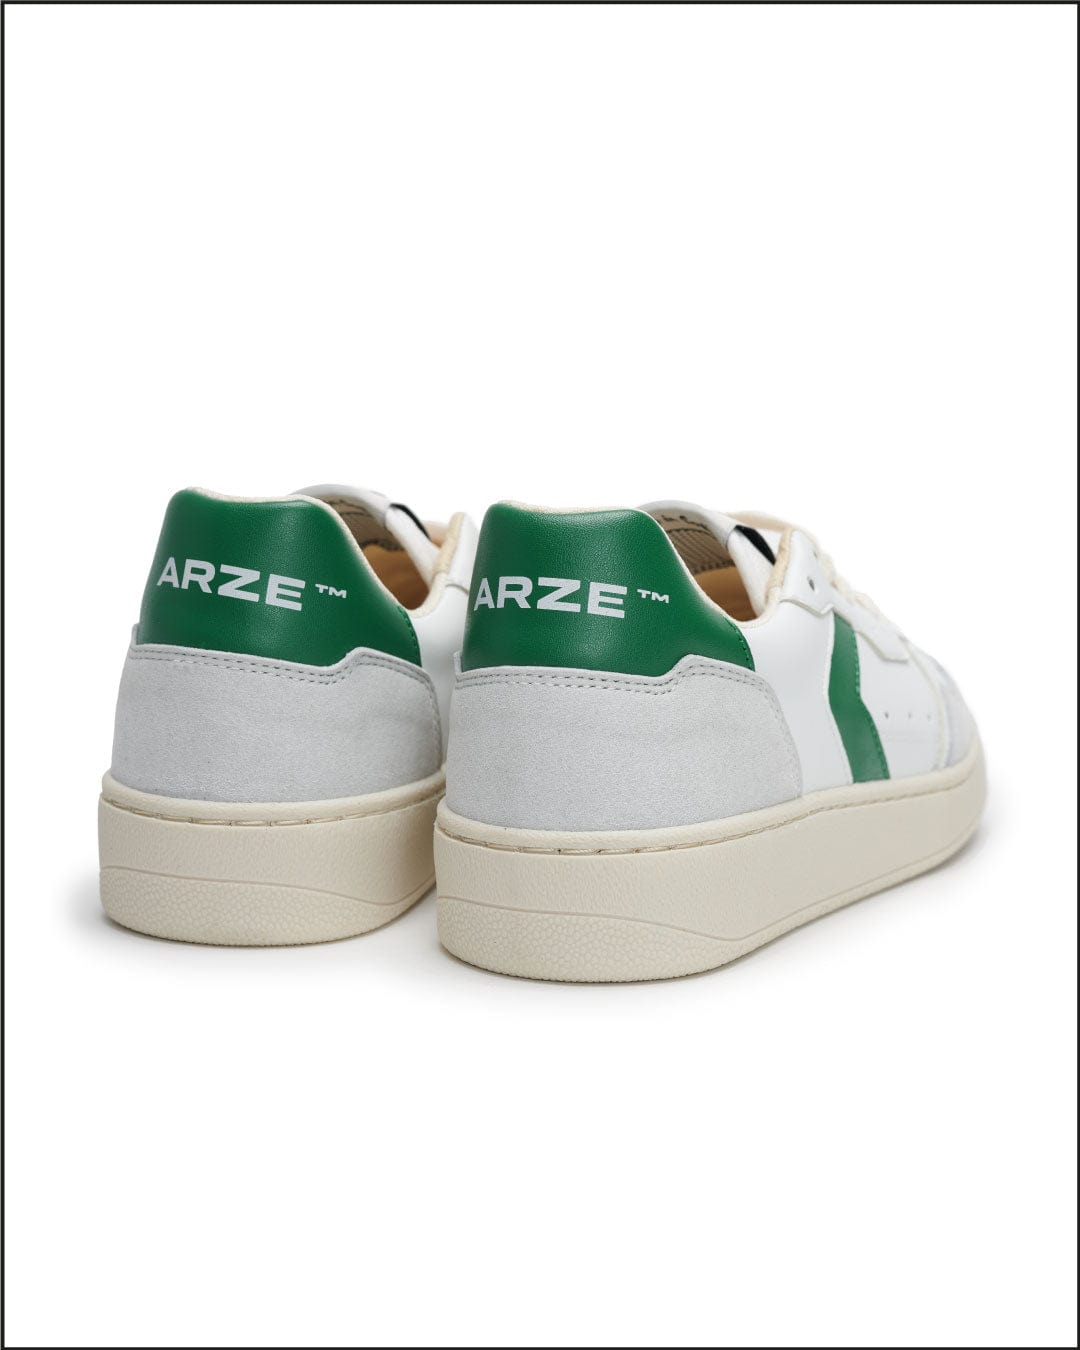 Taiga Green Sneakers